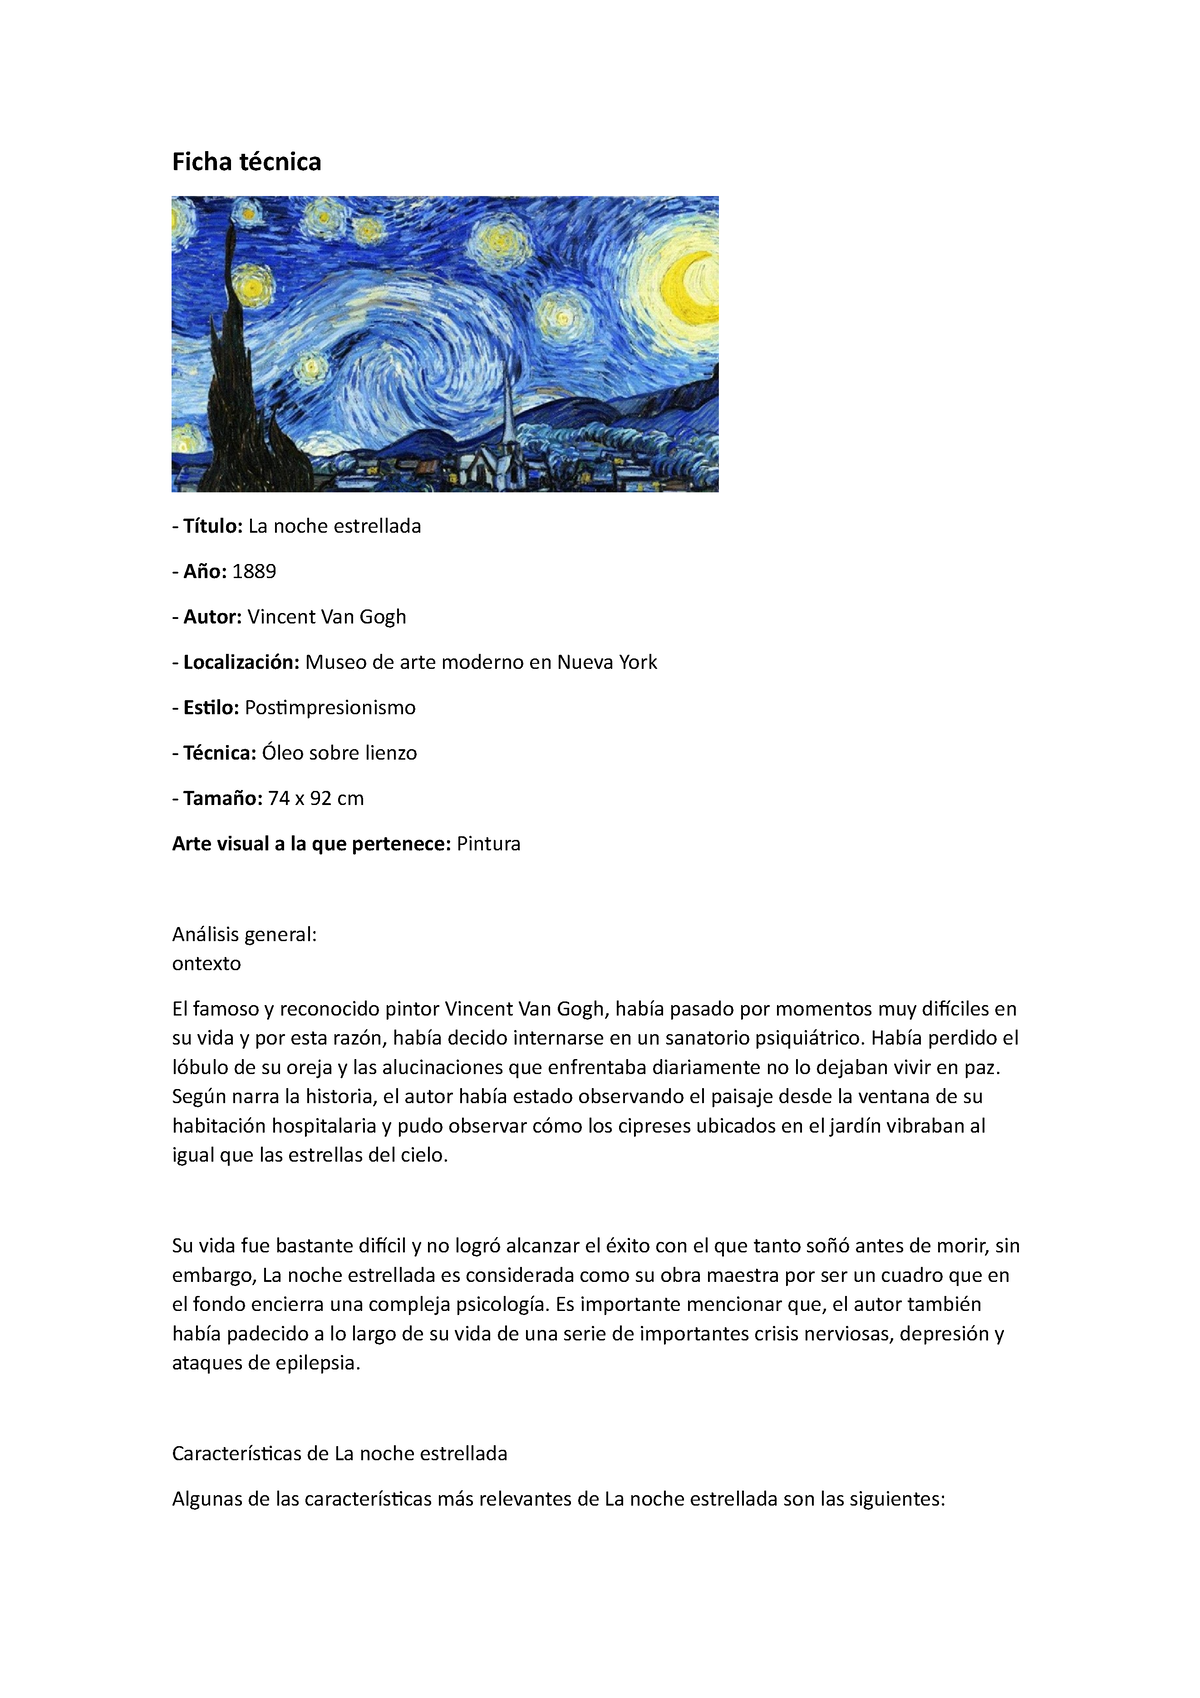 Entretener Santuario India Informaciones generales de La Noche Estrellada de Van Gogh - Ficha técnica  Título: La noche - Studocu